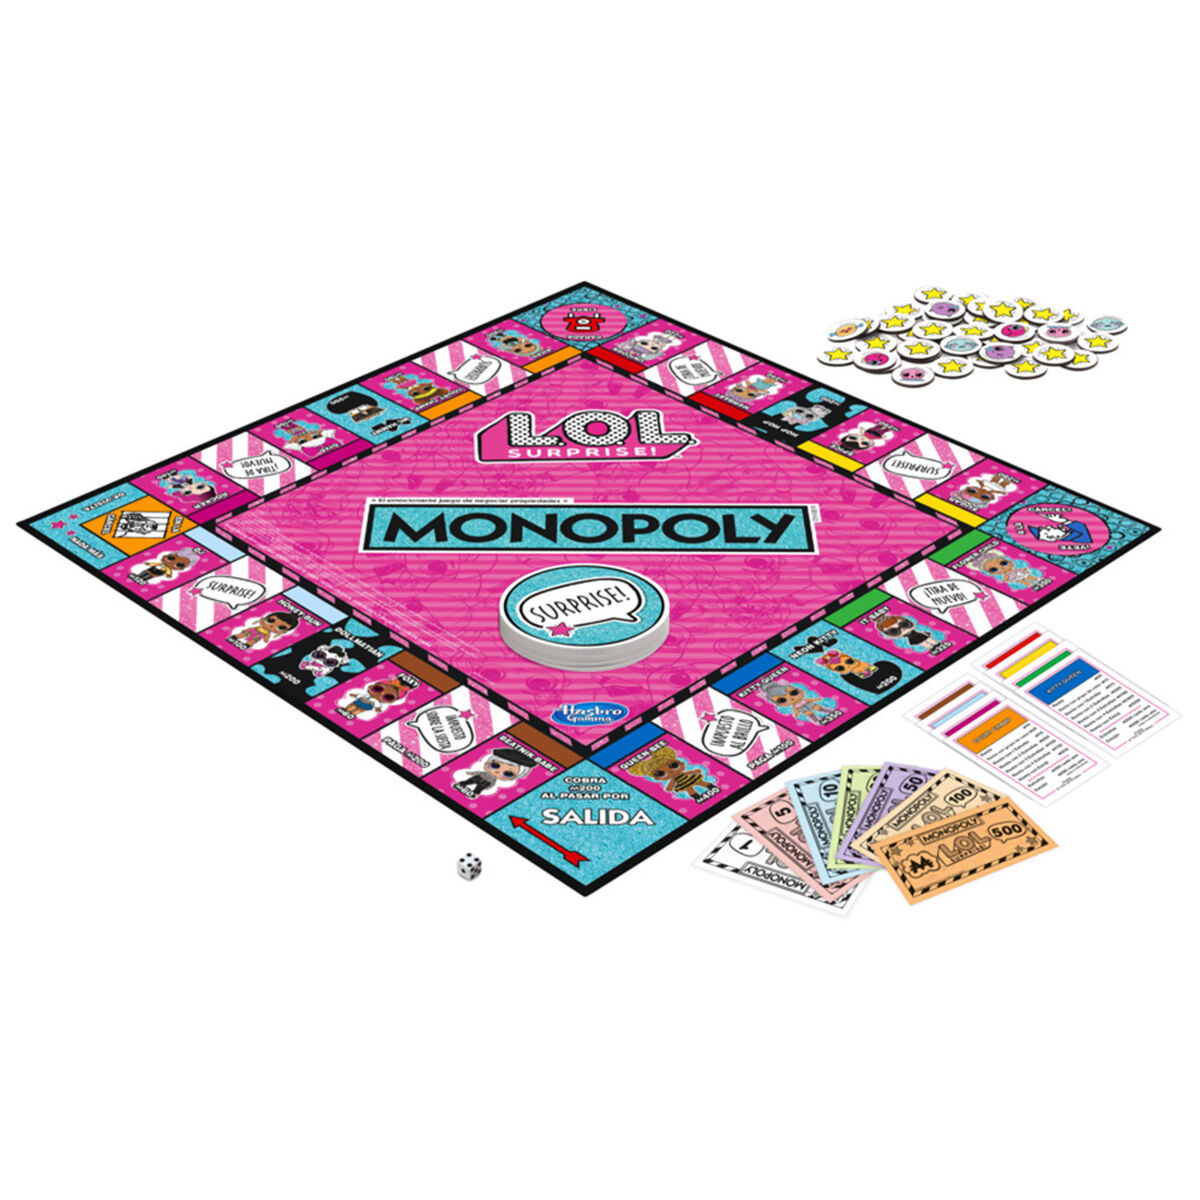 Monopoly LOL